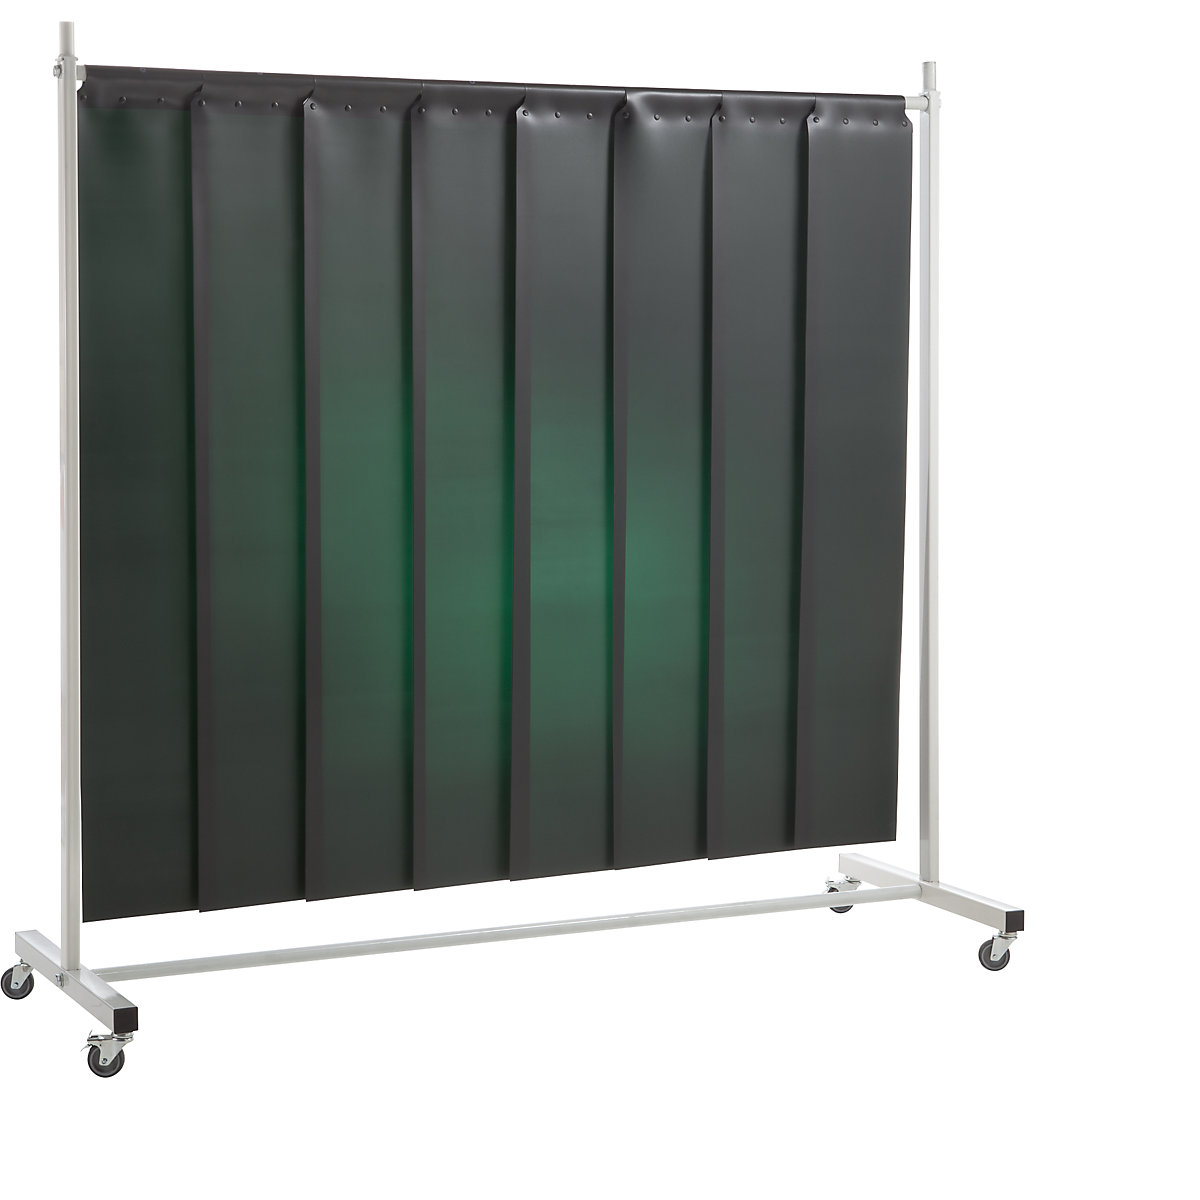 Ochranná clona pro svářeče, mobilní, s lamelovým závěsem, tmavě zelená, š x v 2100 x 2100 mm, 1dílná-4